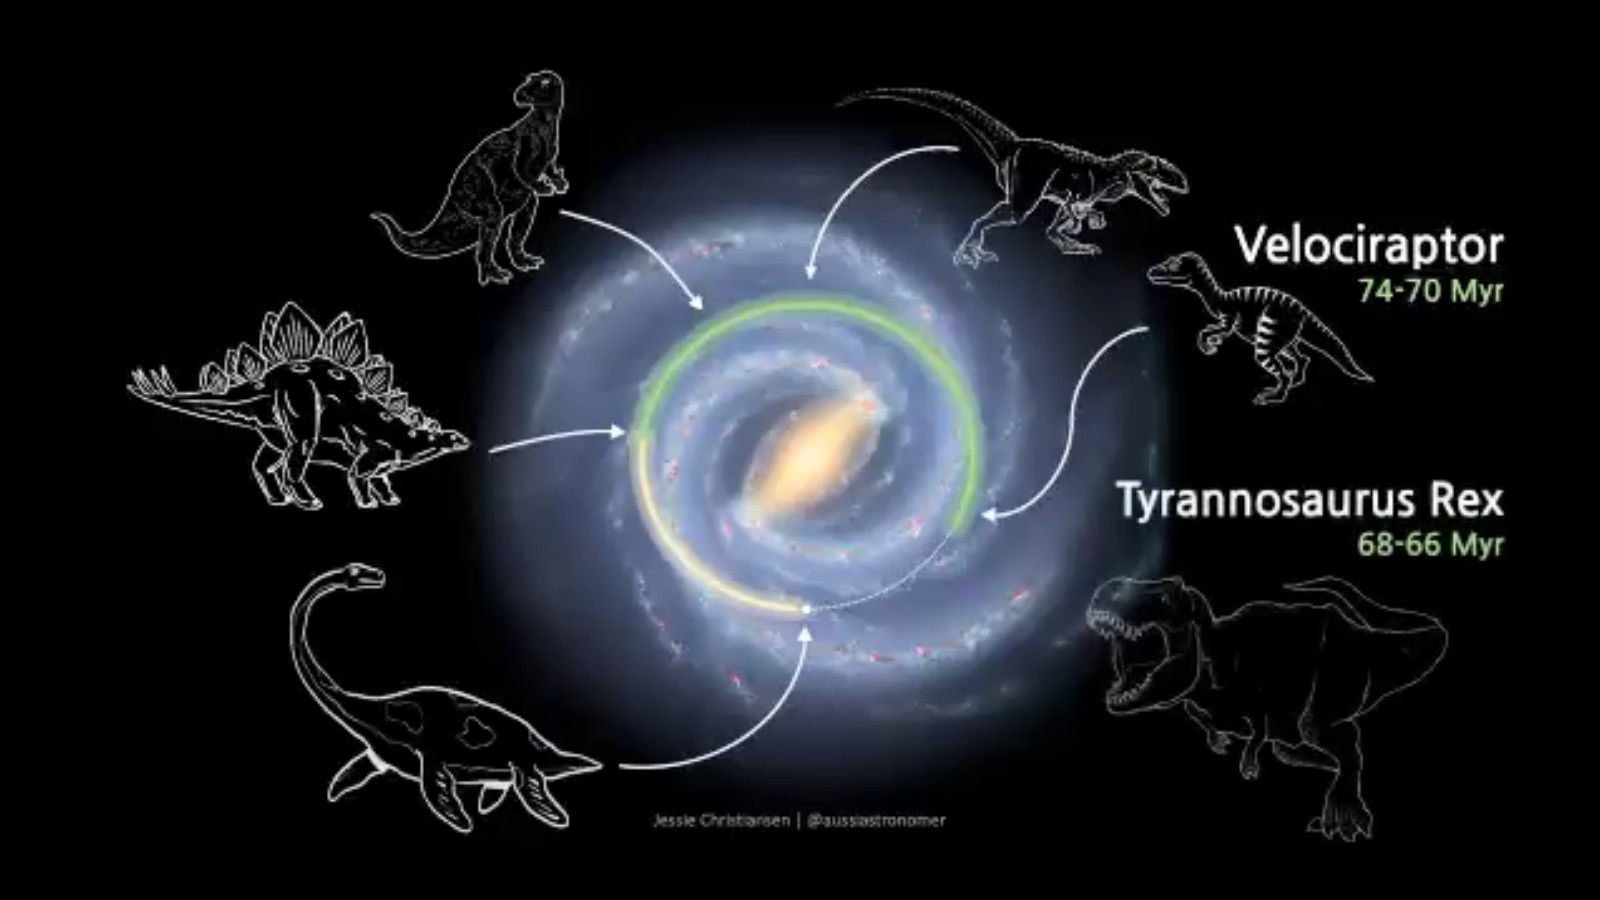 Quando os dinossauros estavam por aqui, a Terra estava no outro lado da galáxia (Foto: Reprodução Twitter @aussiastronomer)